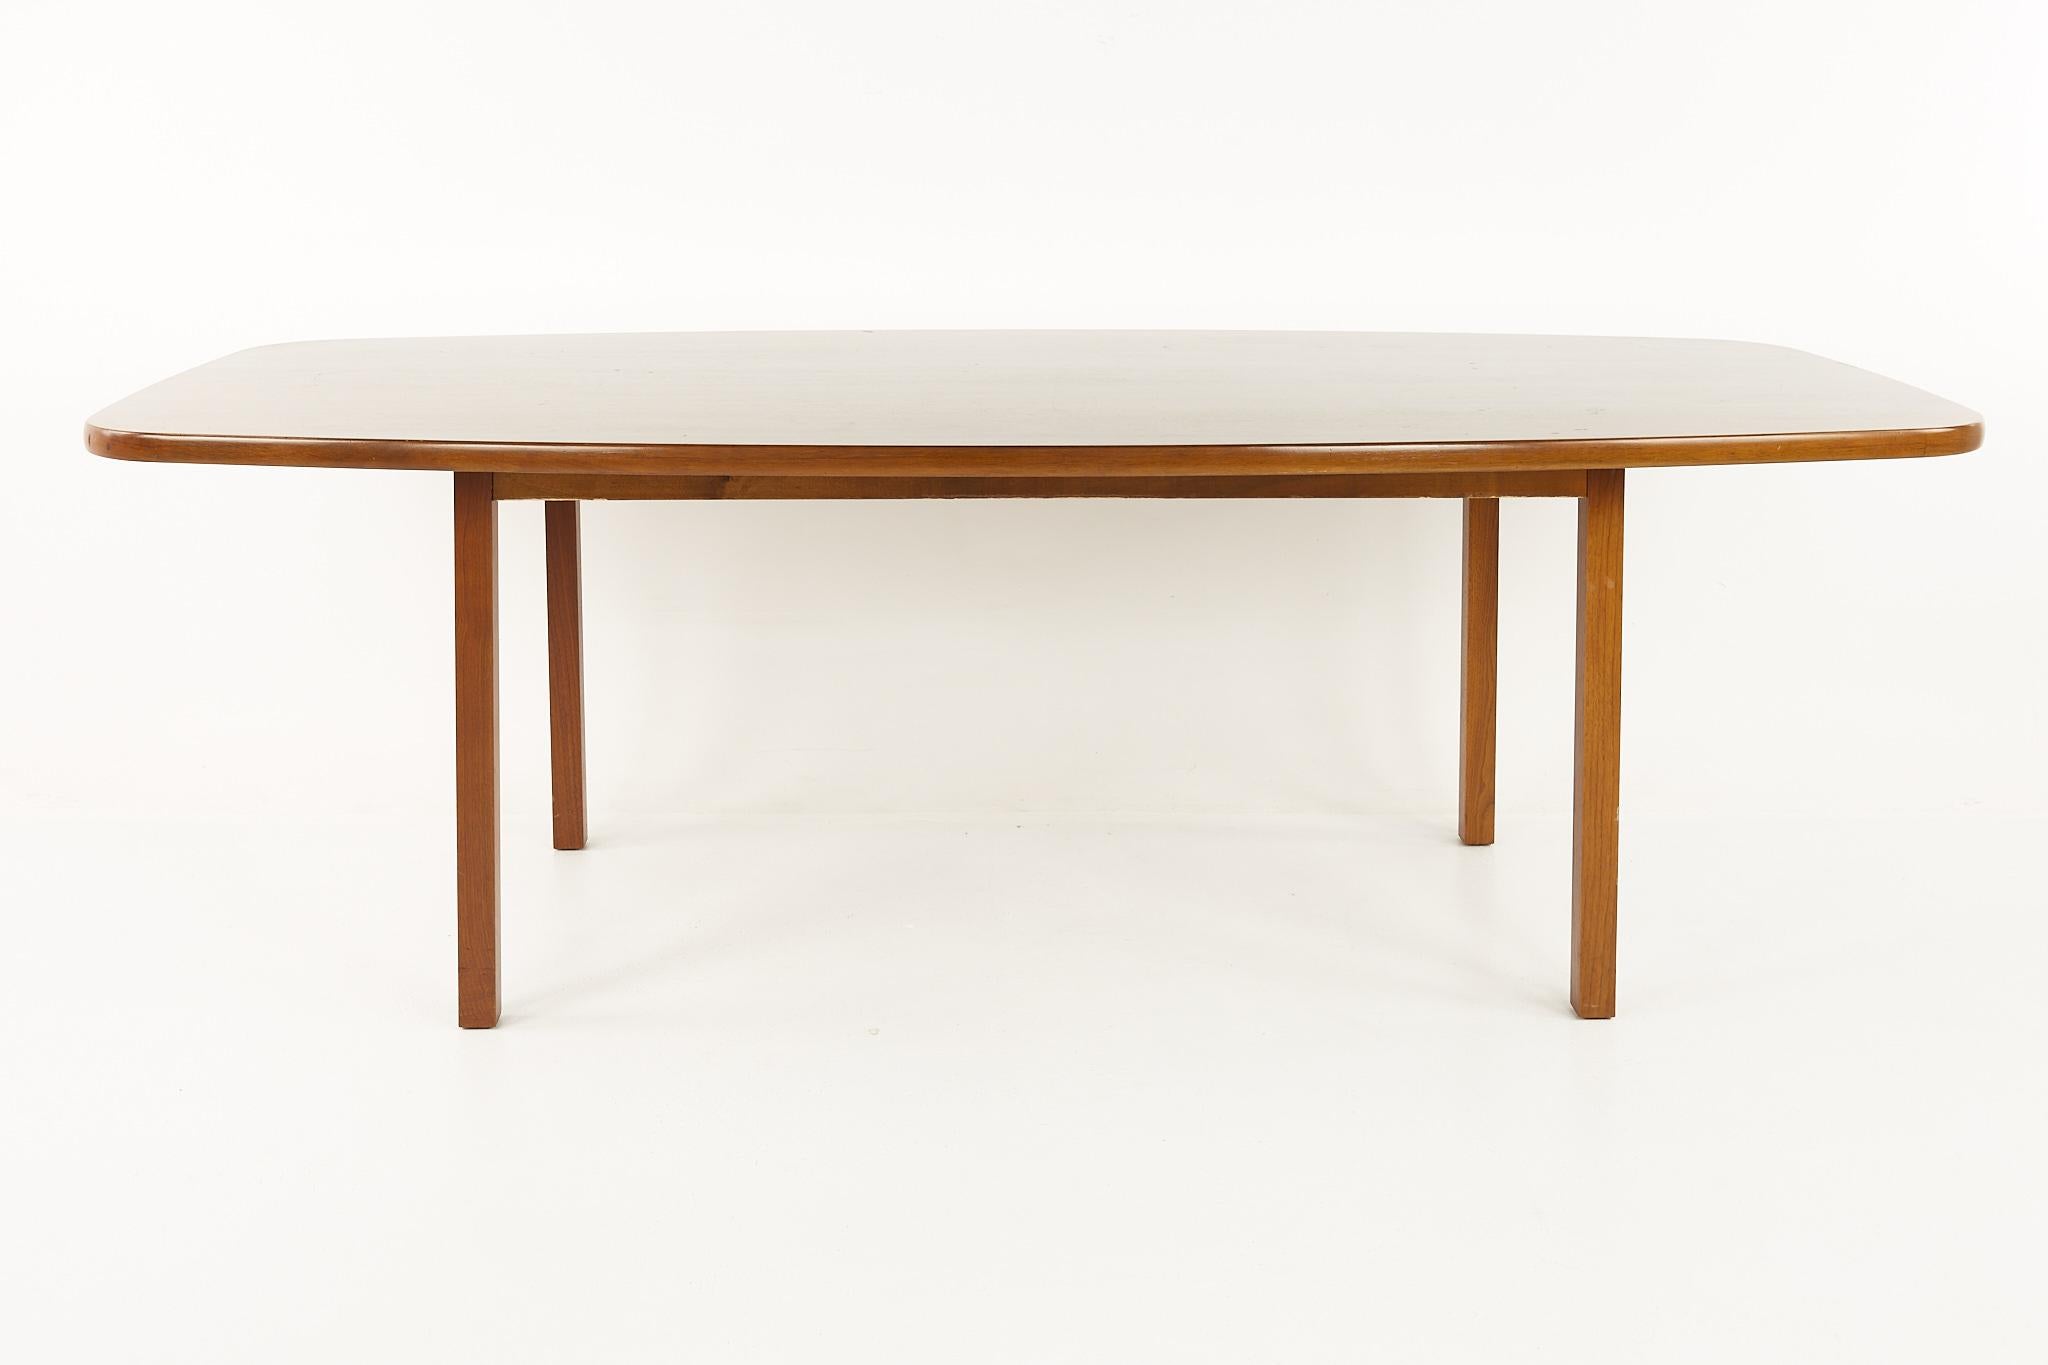 Edward Wormley für Dunbar Konferenztisch aus der Mitte des Jahrhunderts

Dieser Tisch misst: 90 breit x 42 tief x 29 Zoll hoch, mit einem Stuhl Abstand von 29,5 Zoll

Alle Möbelstücke sind in einem so genannten restaurierten Vintage-Zustand zu